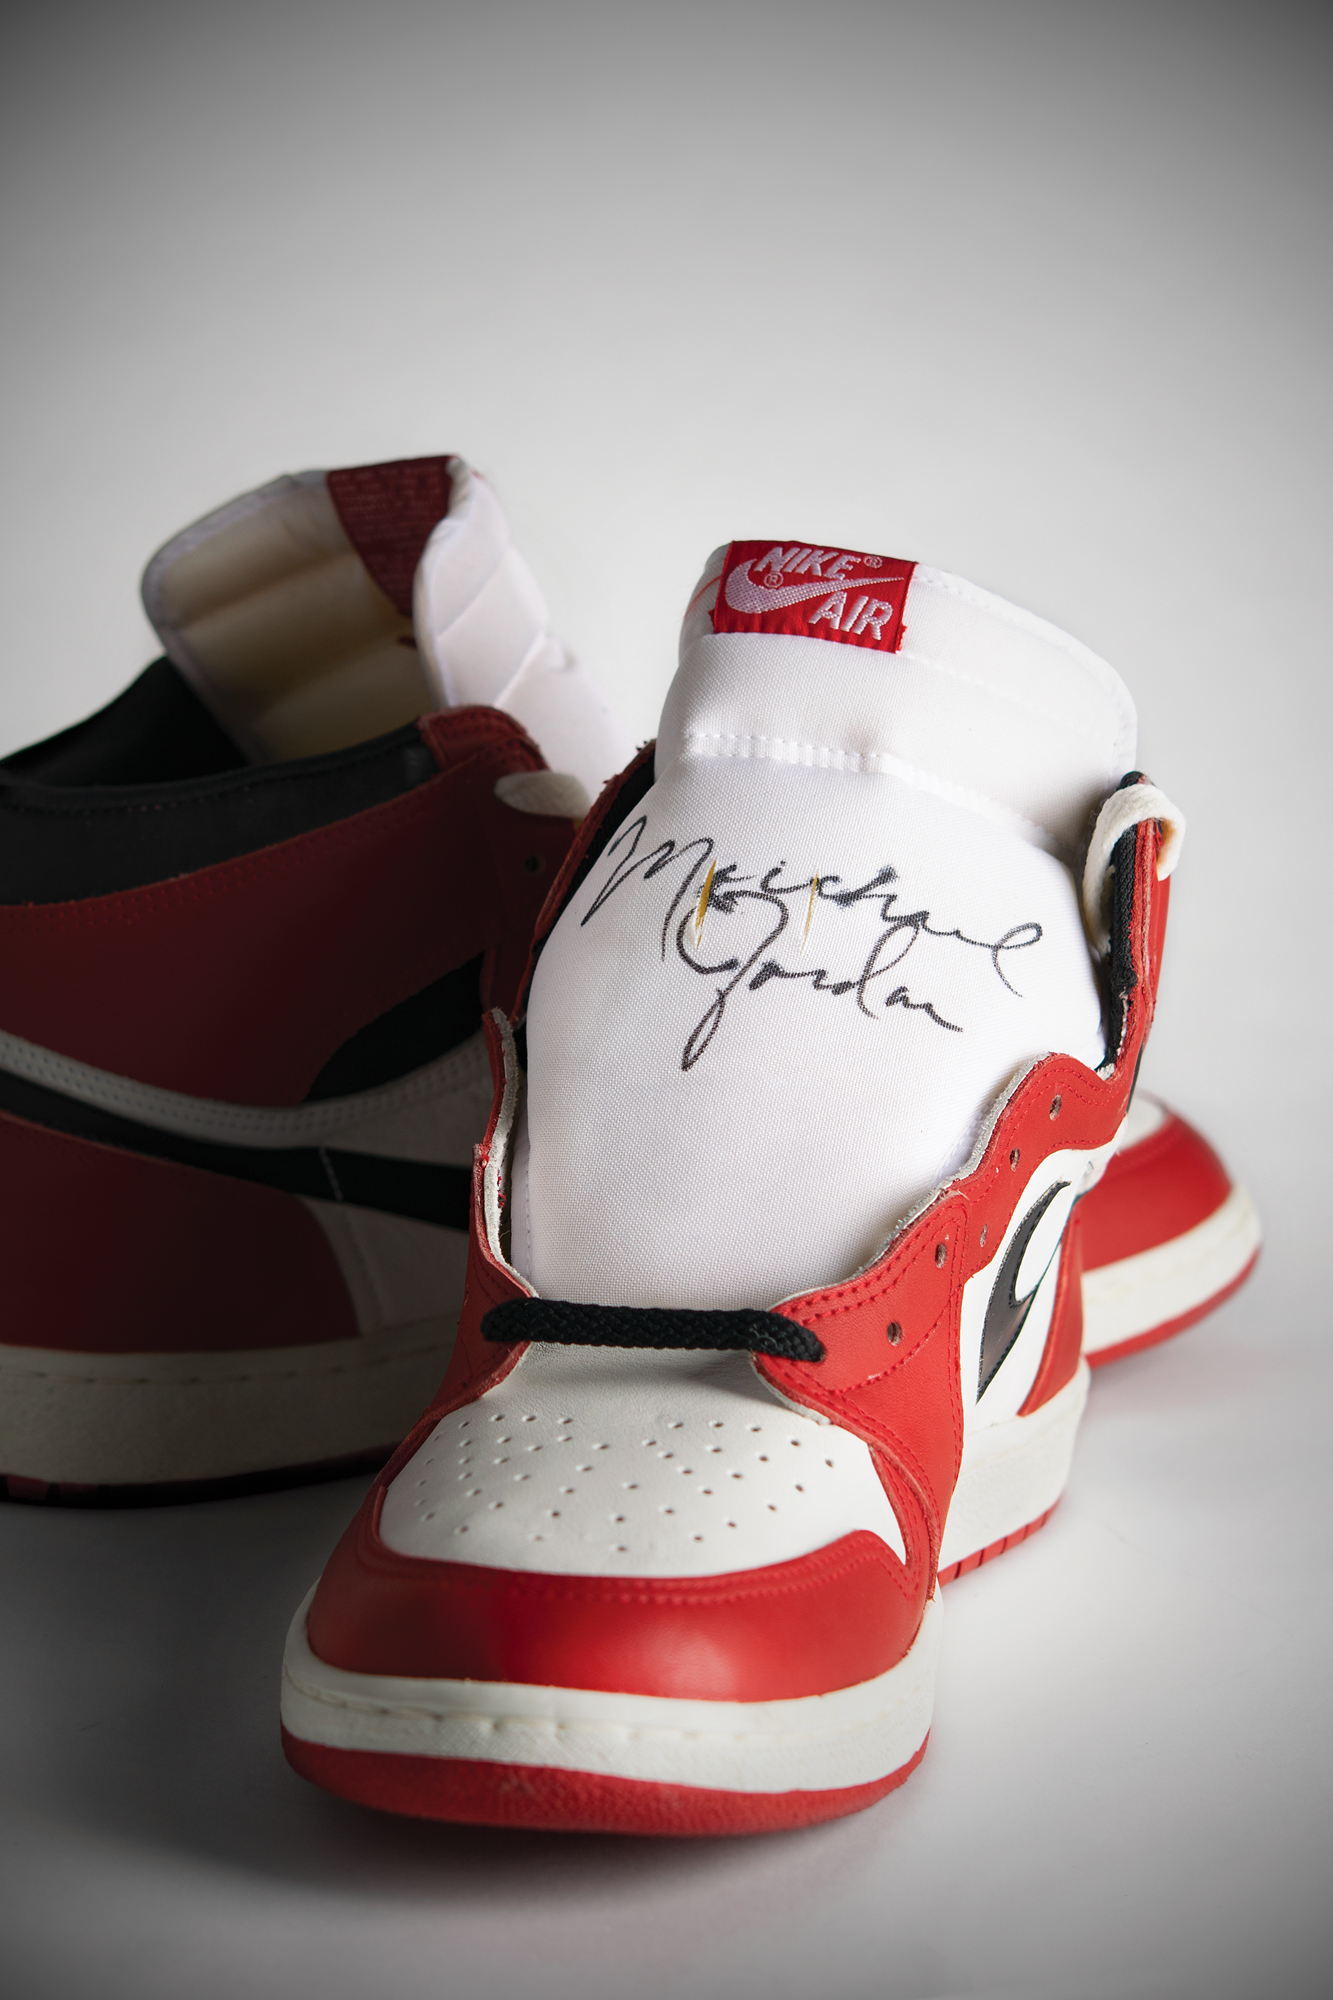 Lot #767 Michael Jordan: Air Jordan 1 'Player Sample' Sneakers Signed as a Rookie